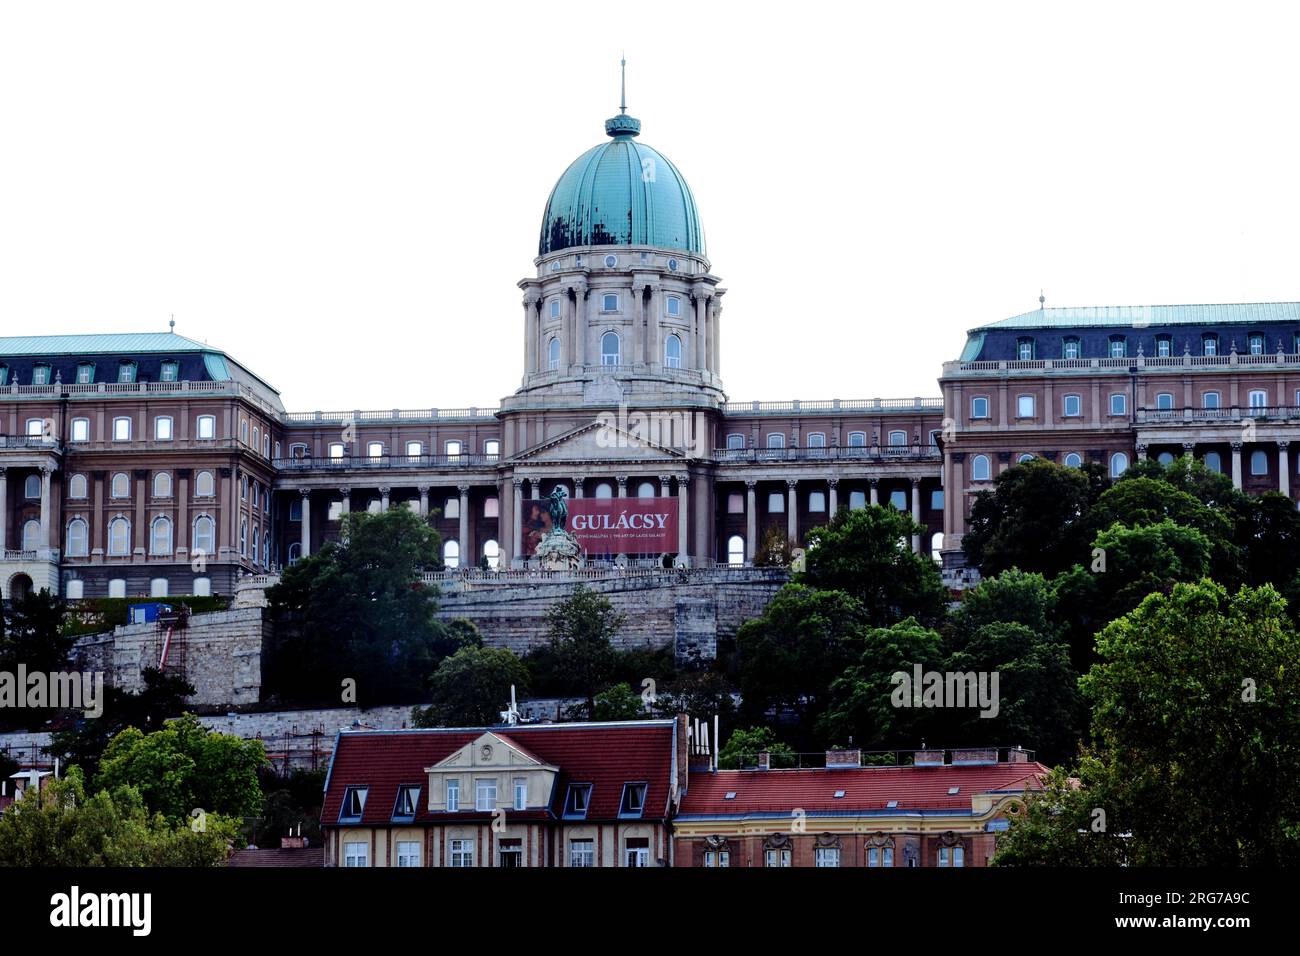 Die Nationalgalerie auf dem Burghügel in Budapest. Großes Plakat mit Werbung für die Malerausstellung Gulacsy Lajos. Historisches Gebäude im Barockstil Stockfoto